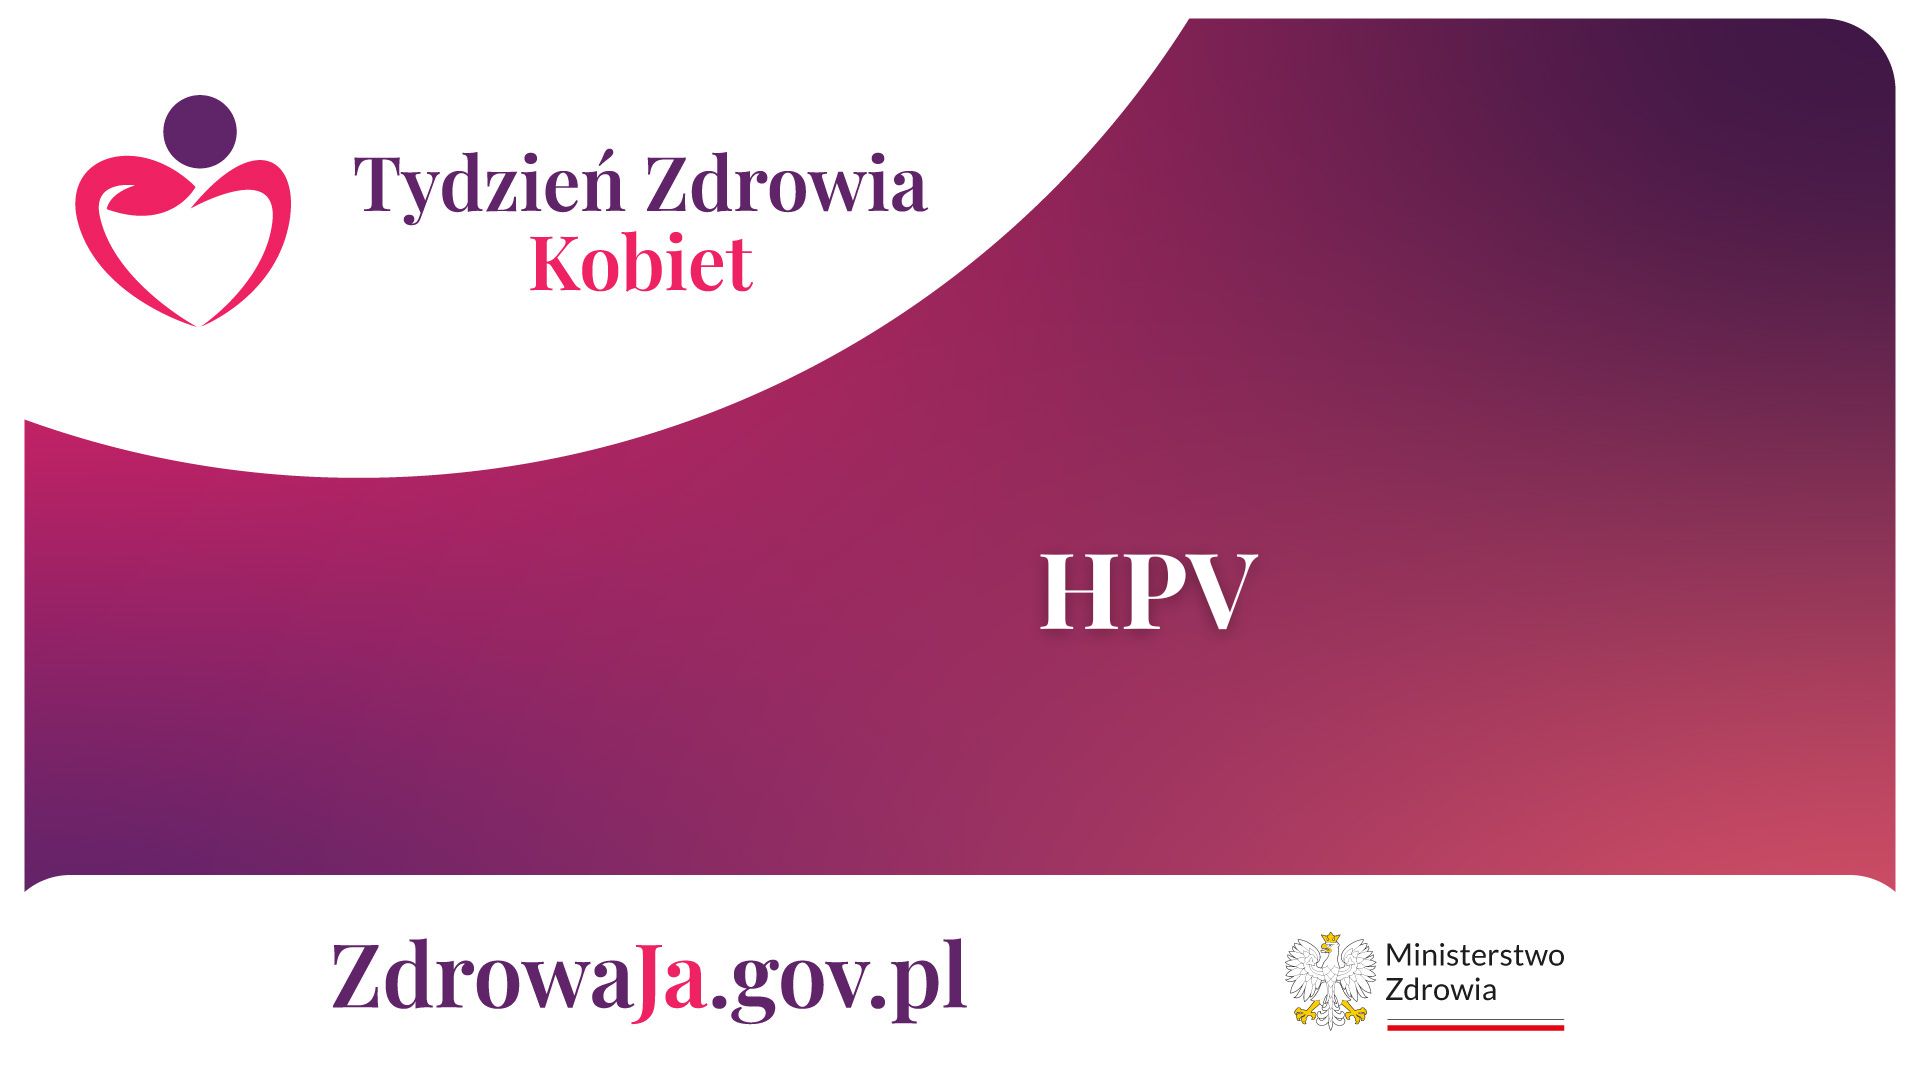 HPV – Tydzień Zdrowia Kobiet